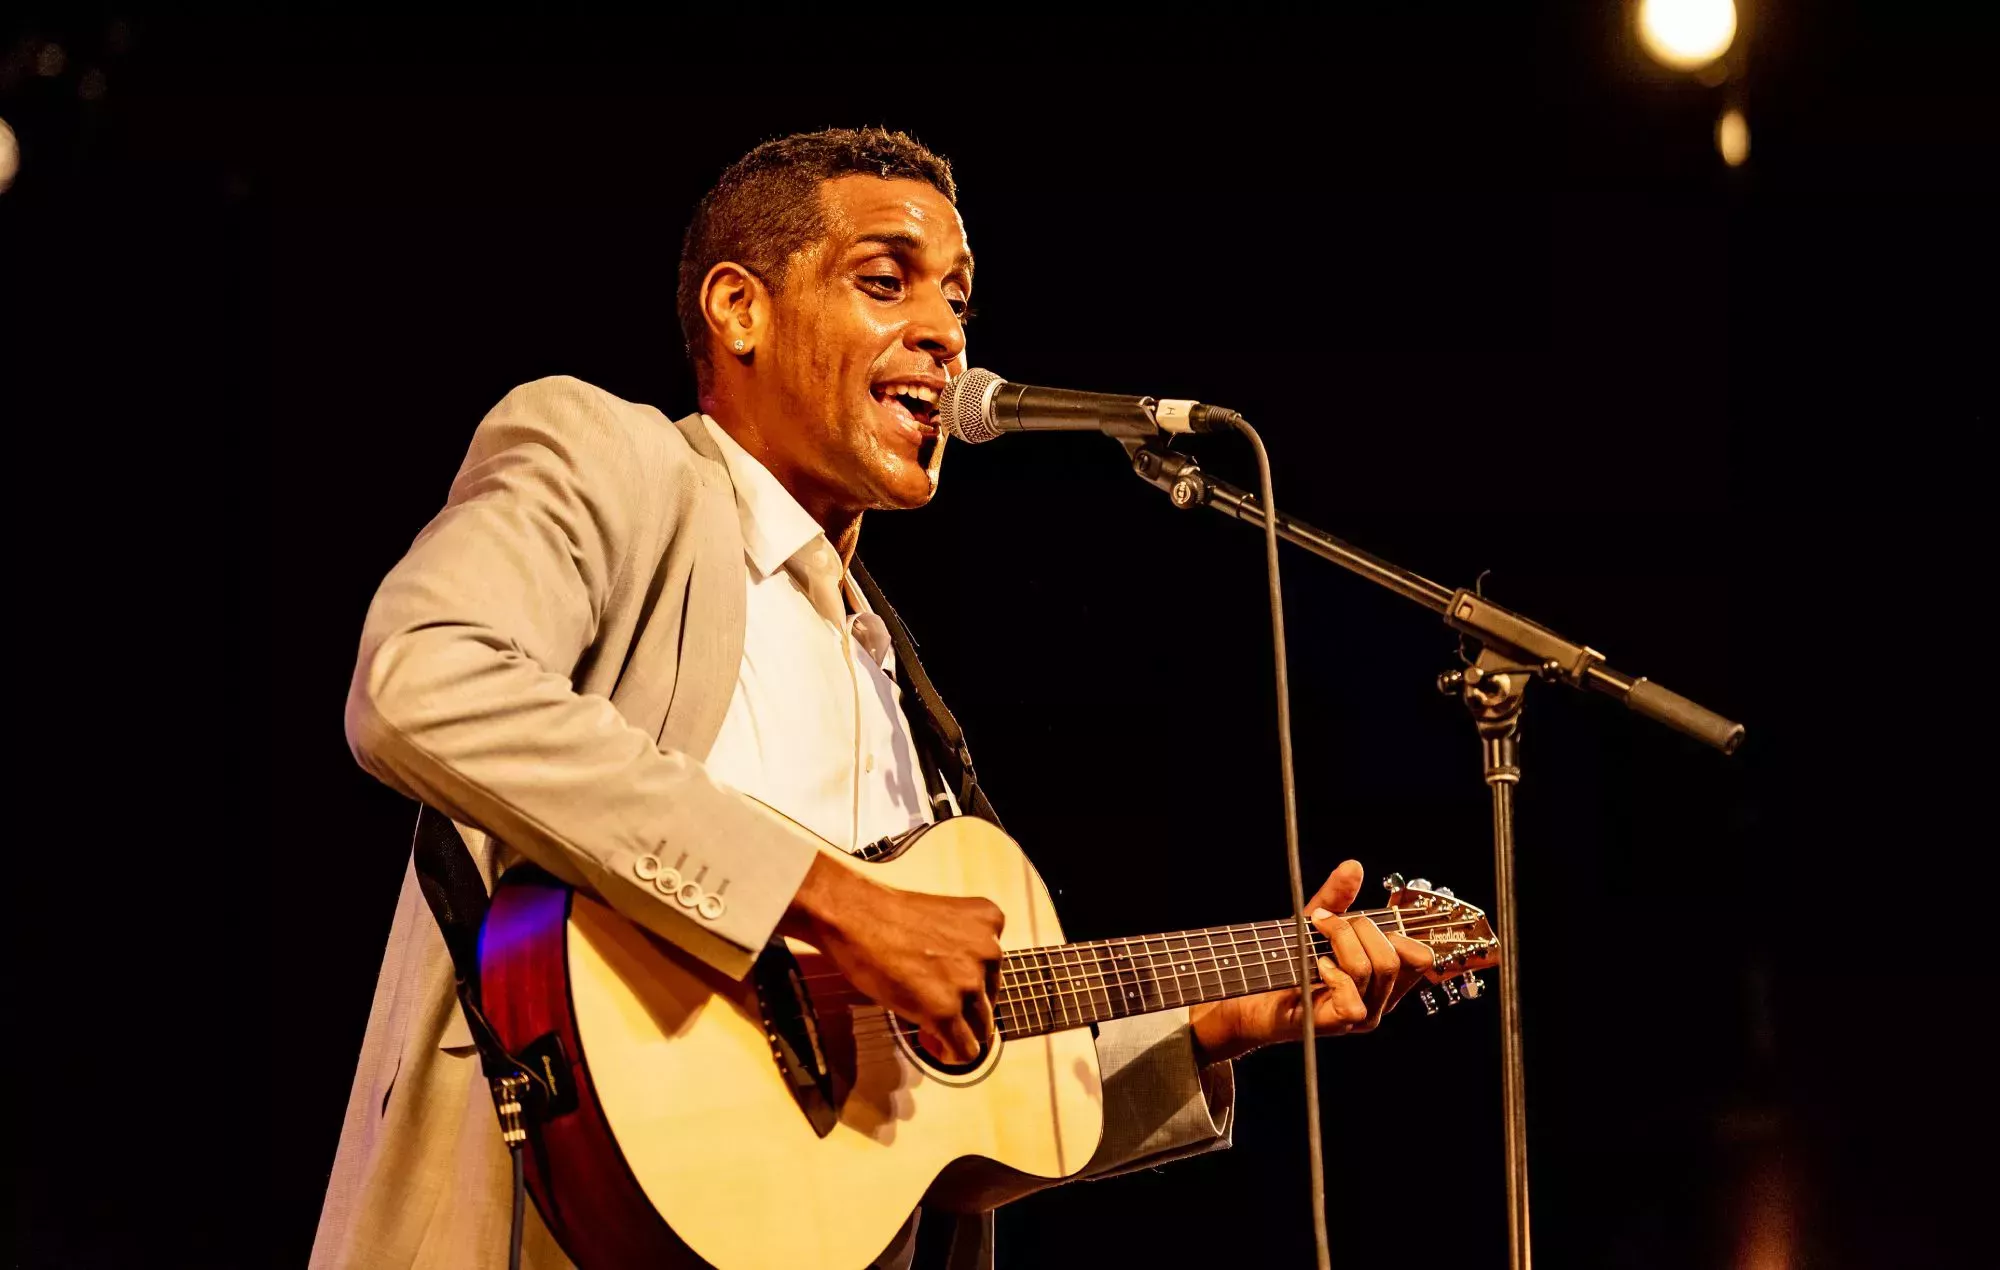 El popular cantante haitiano Mikaben muere tras sufrir un colapso durante un concierto en París